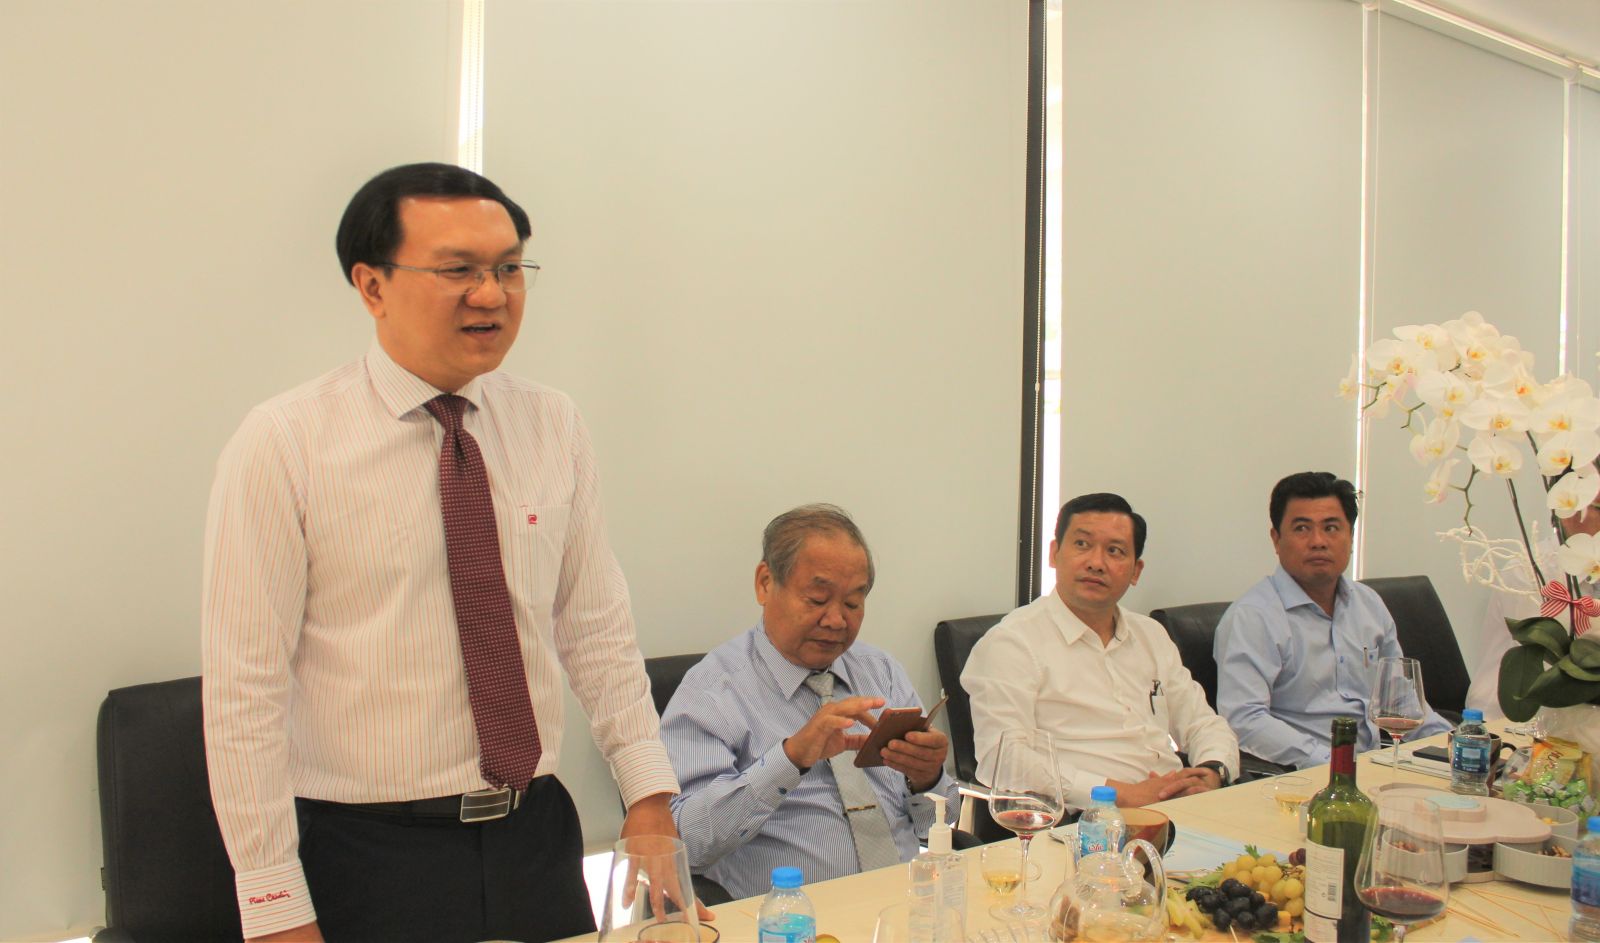 Đồng chí Lâm Đình Thắng, Phó Bí thư Thường trực Quận ủy Bình Thạnh ghi nhận và biểu dương những thành quả, đóng góp trong năm 2019 của Công ty Cổ phần Kỹ thuật Bình Sơn